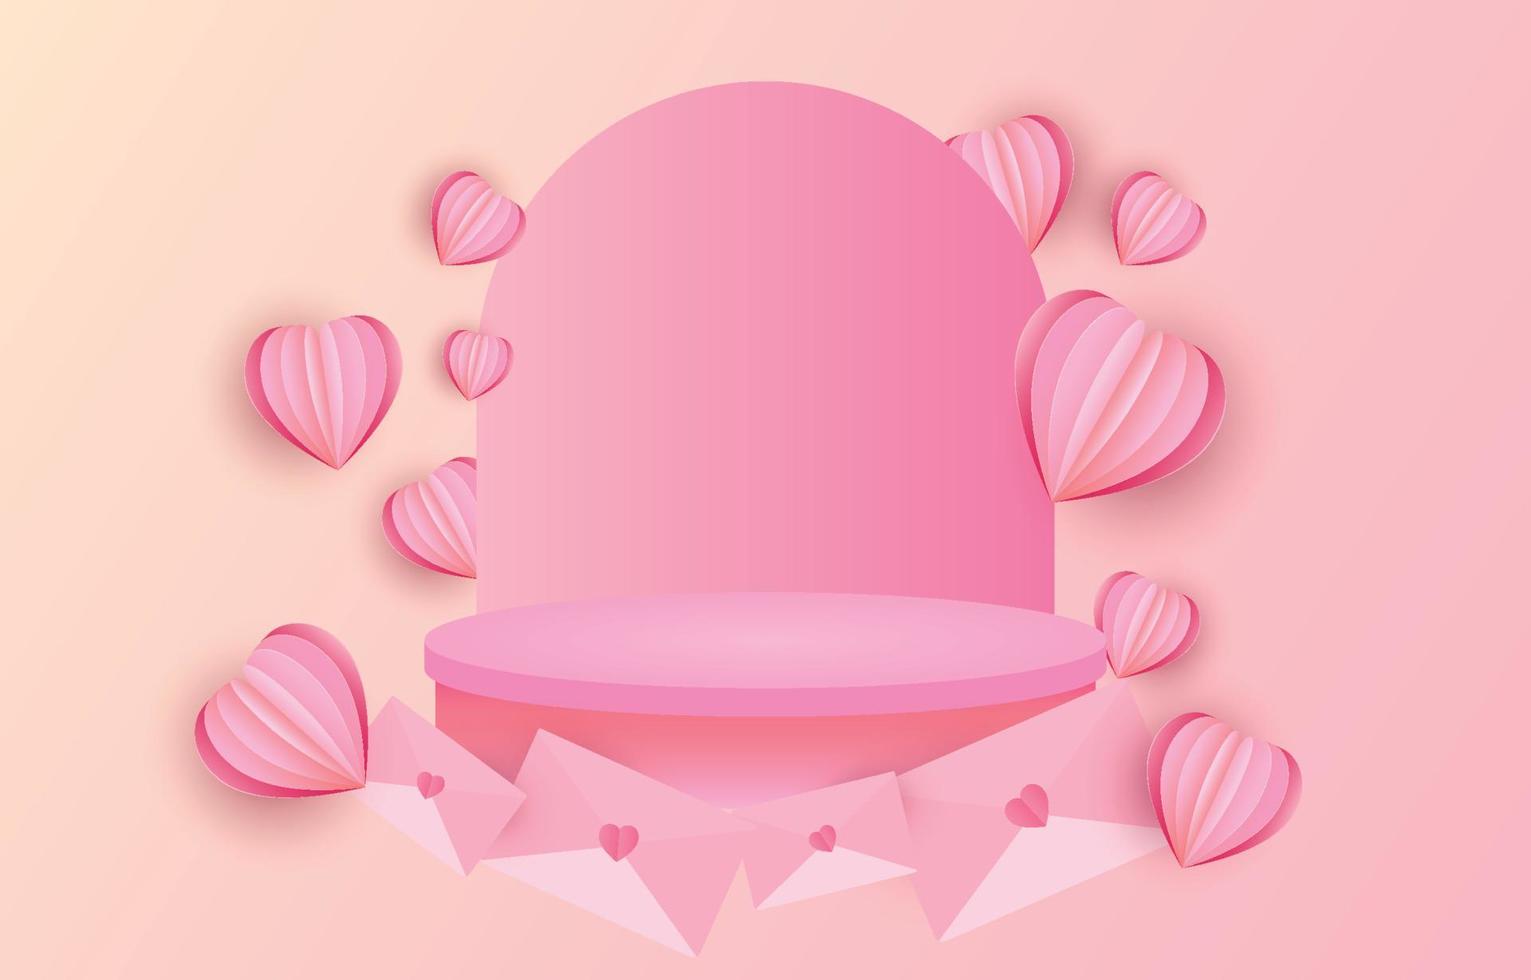 hjärtans dag begrepp bakgrund. vektor illustration podium dekorerad med kuvert. ljuv och rosa papper skära hjärtan med runda piedestal. söt kärlek försäljning baner eller hälsning kort